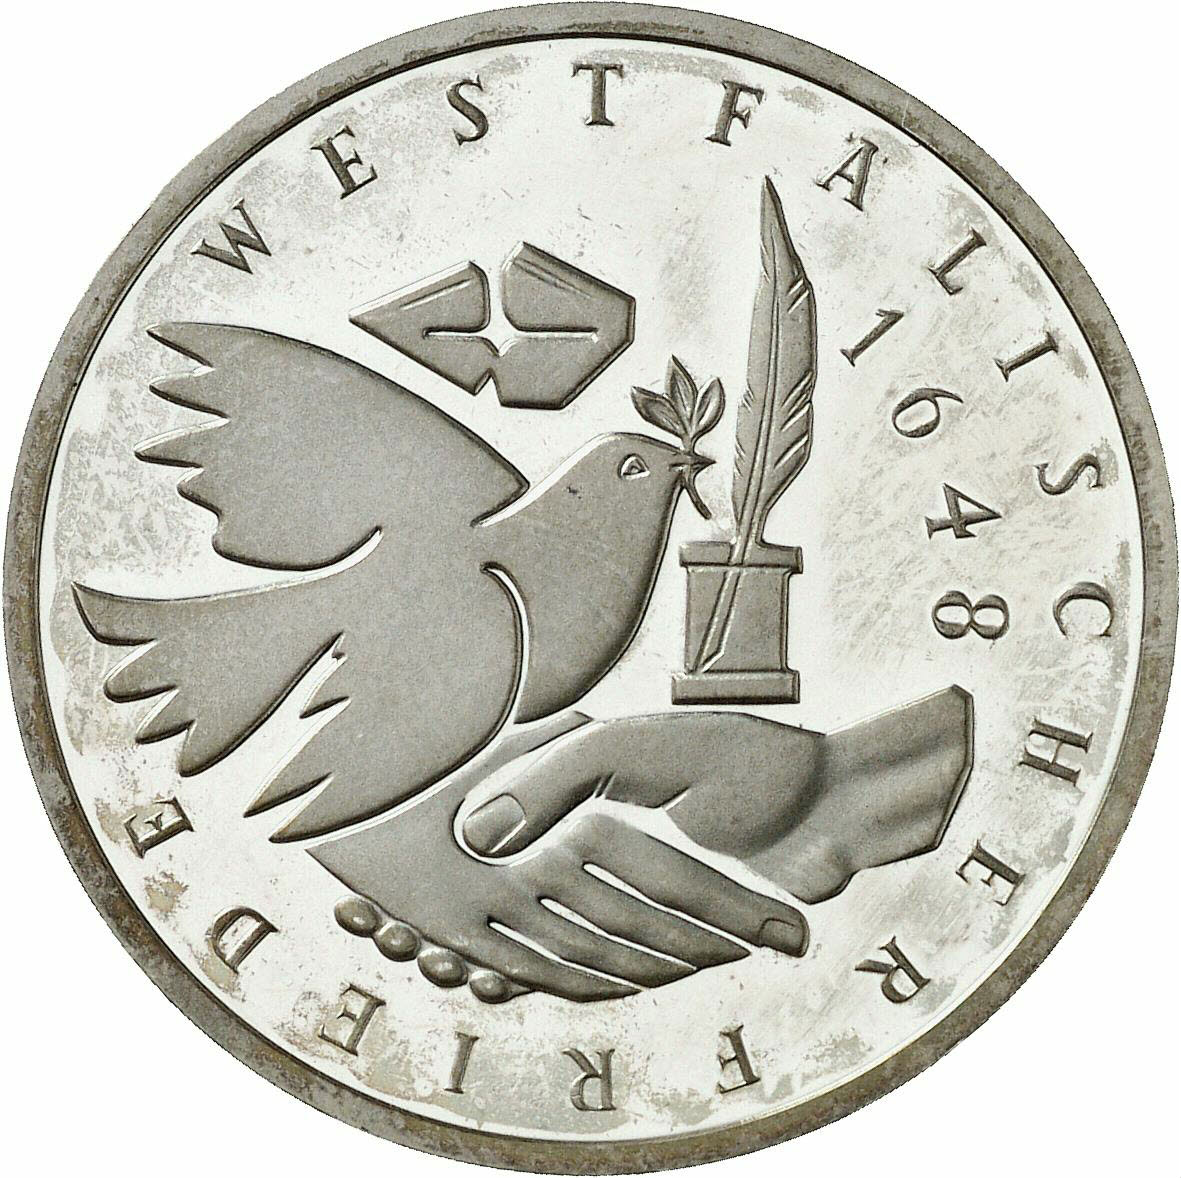 DE 10 Deutsche Mark 1998 G